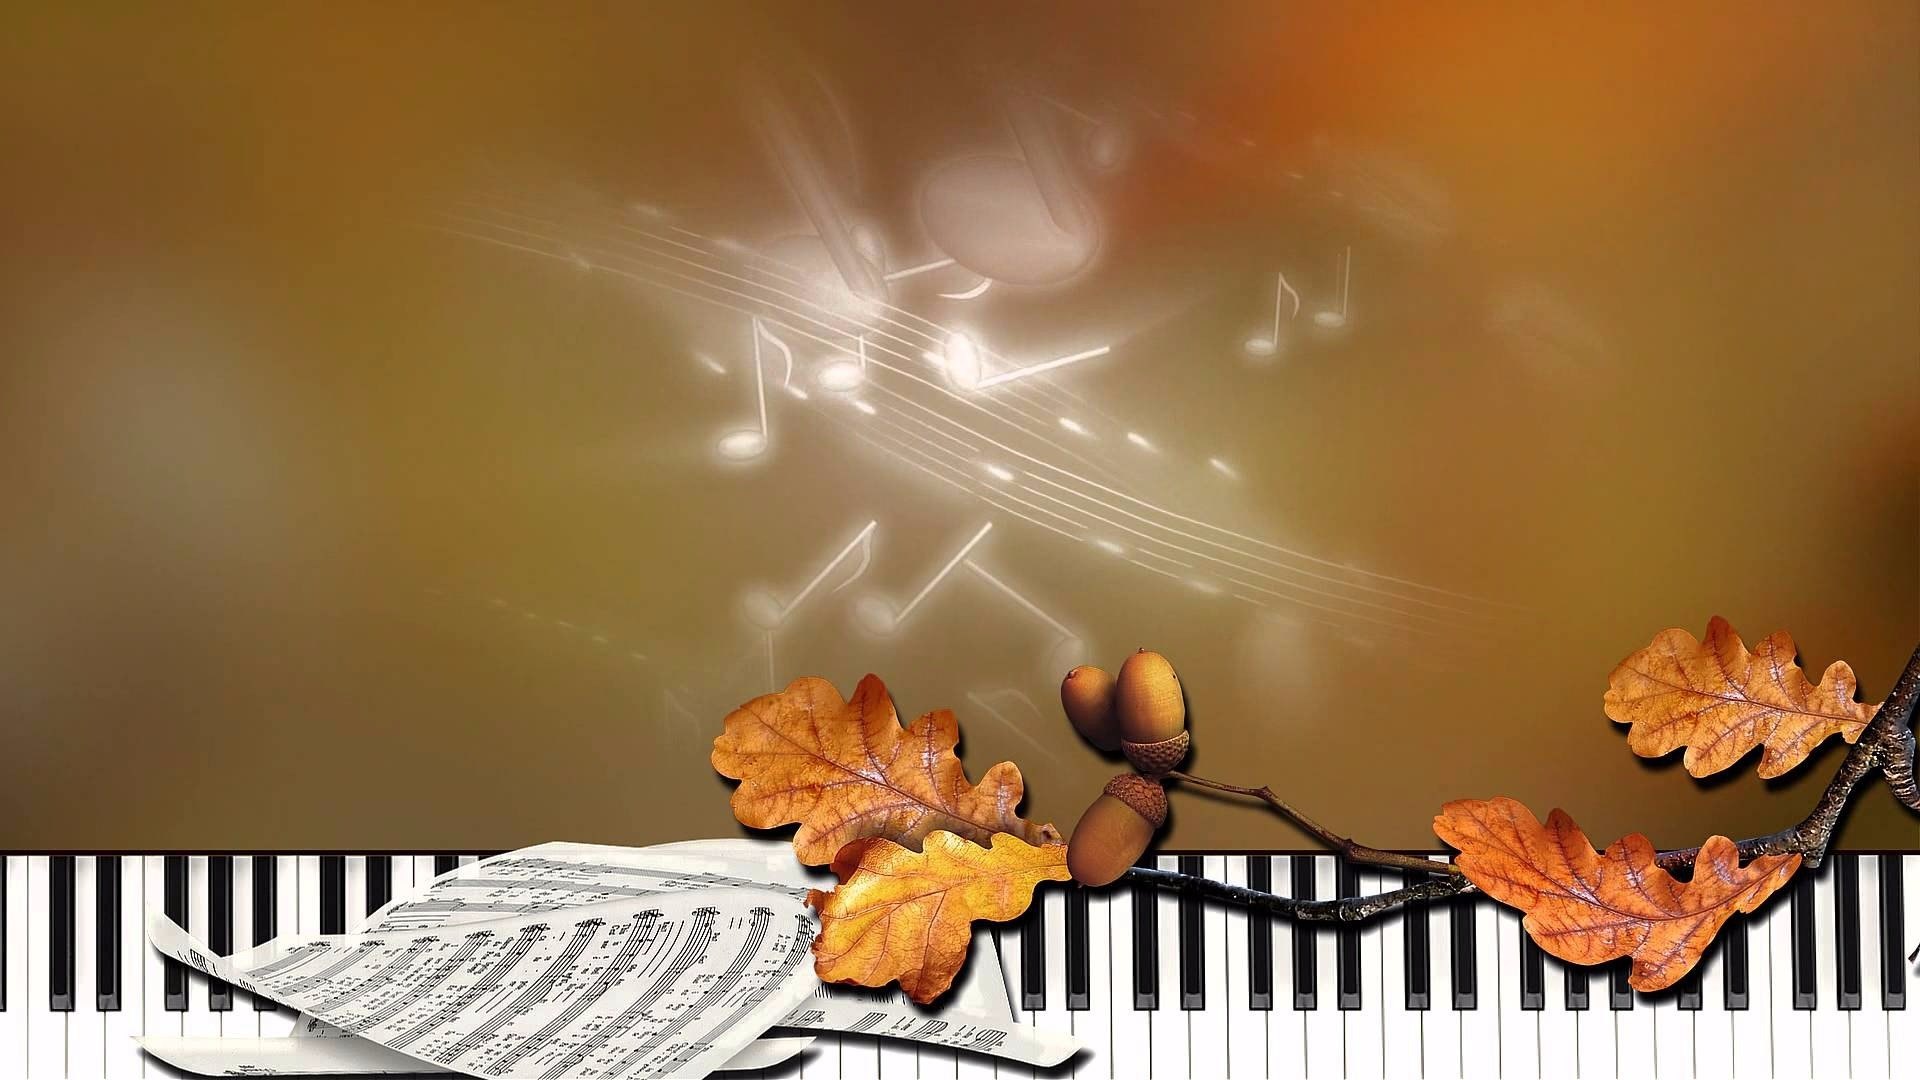 Фоновая музыка для красивых слов. Осенний музыкальный фон. Музыкальная осень фон. Осенний фон с нотами. Осень музыка фон для афиши.